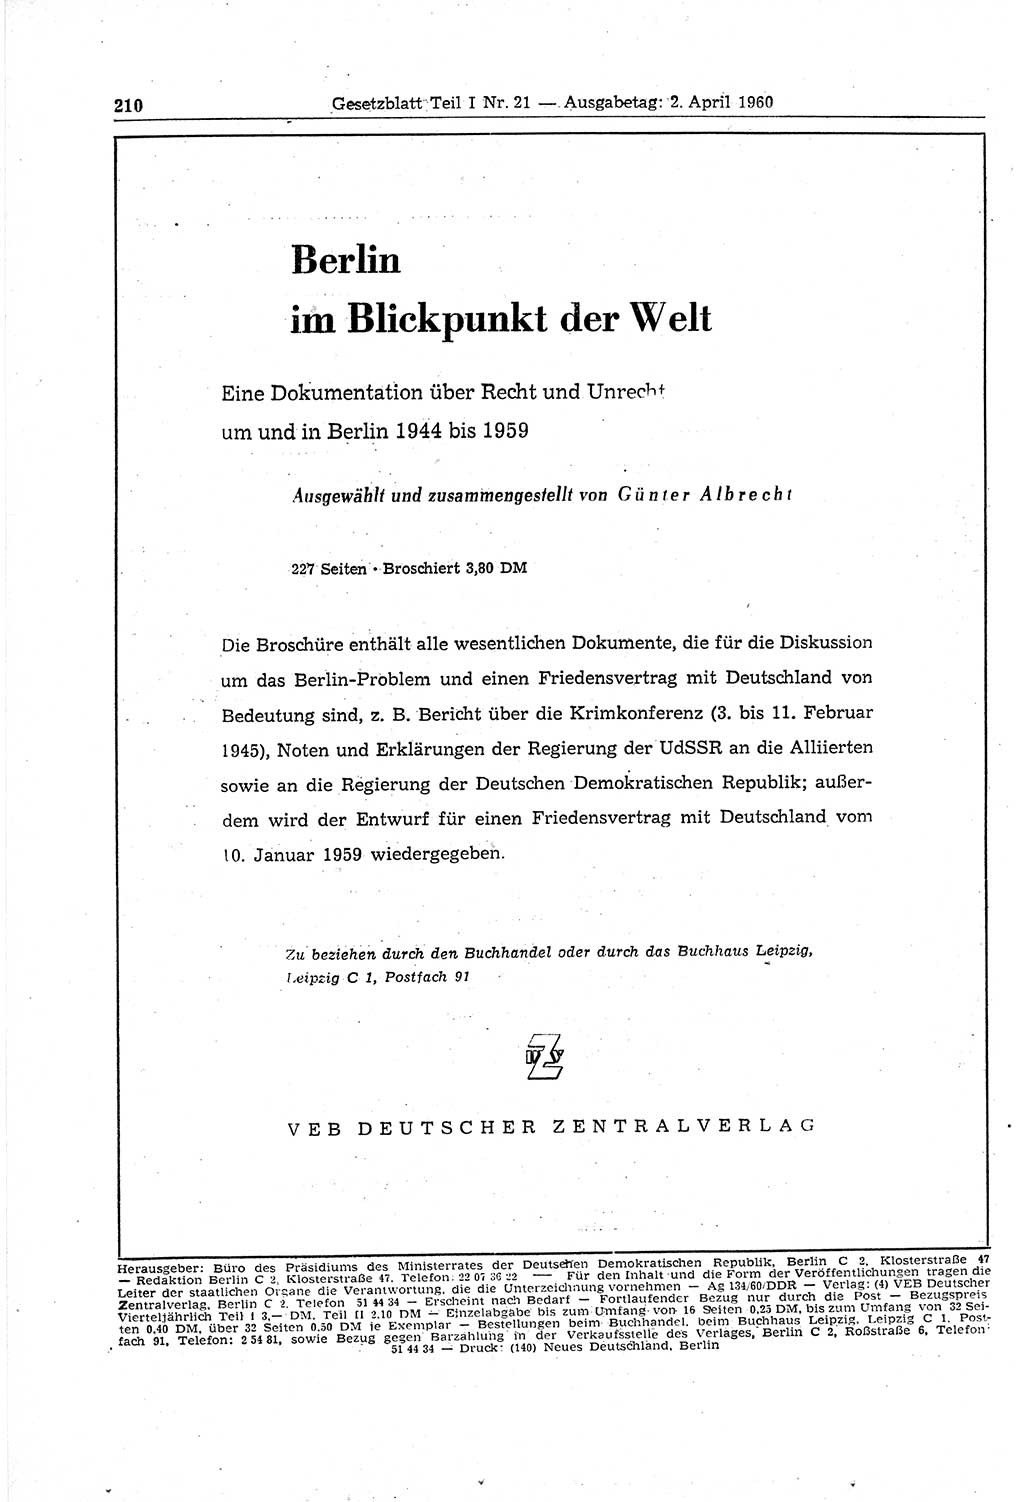 Gesetzblatt (GBl.) der Deutschen Demokratischen Republik (DDR) Teil Ⅰ 1960, Seite 210 (GBl. DDR Ⅰ 1960, S. 210)